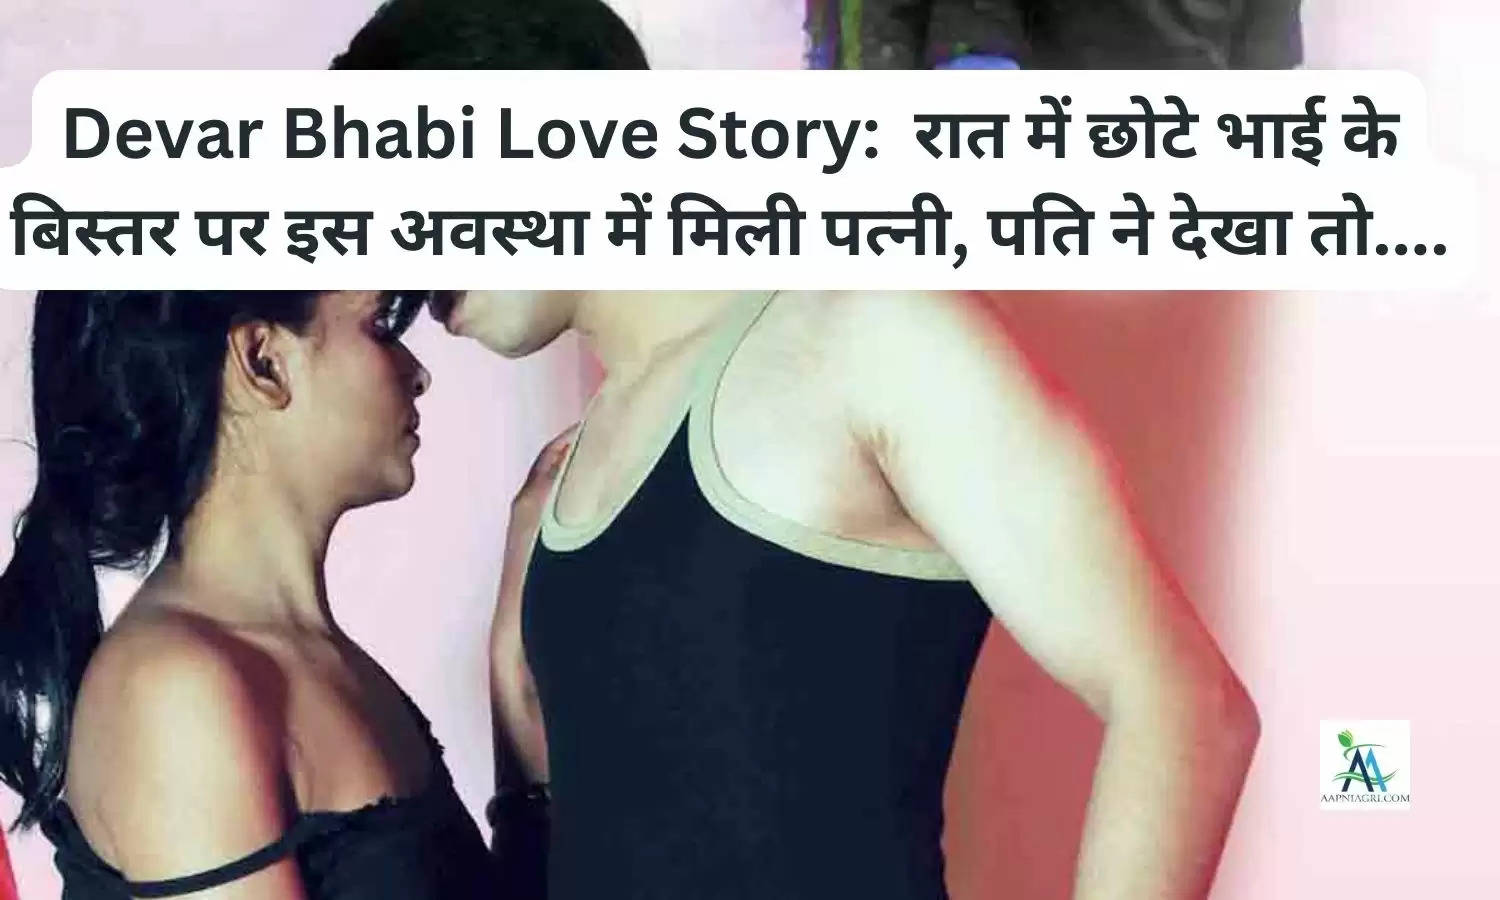 Devar Bhabi Love Story:  रात में छोटे भाई के बिस्तर पर इस अवस्था में मिली पत्नी, पति ने देखा तो....